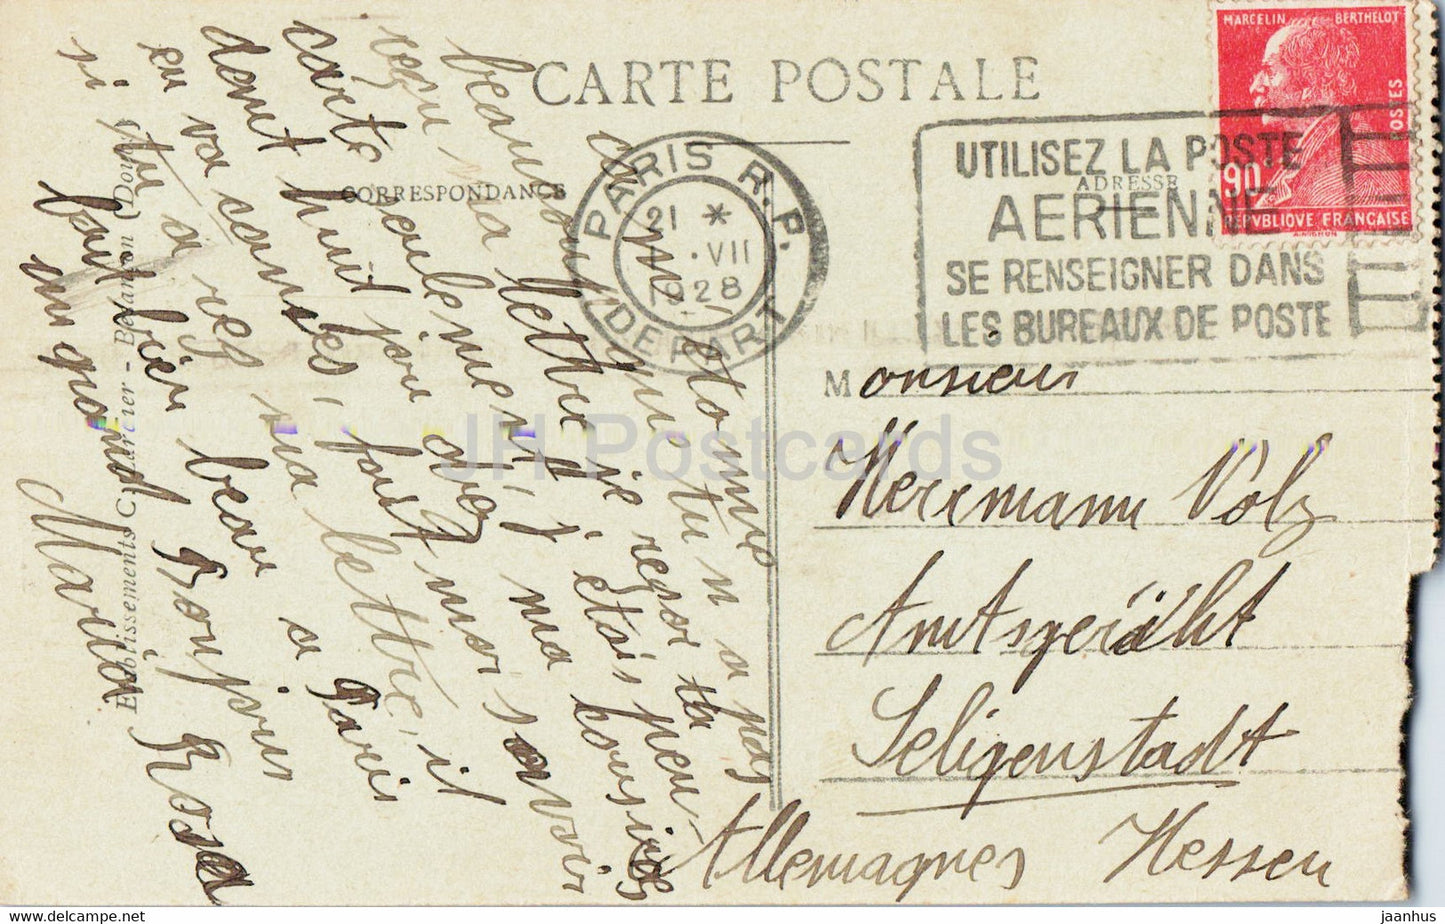 L'Isle sur le Doubs - Cites Meiner - carte postale ancienne - 1928 - France - occasion